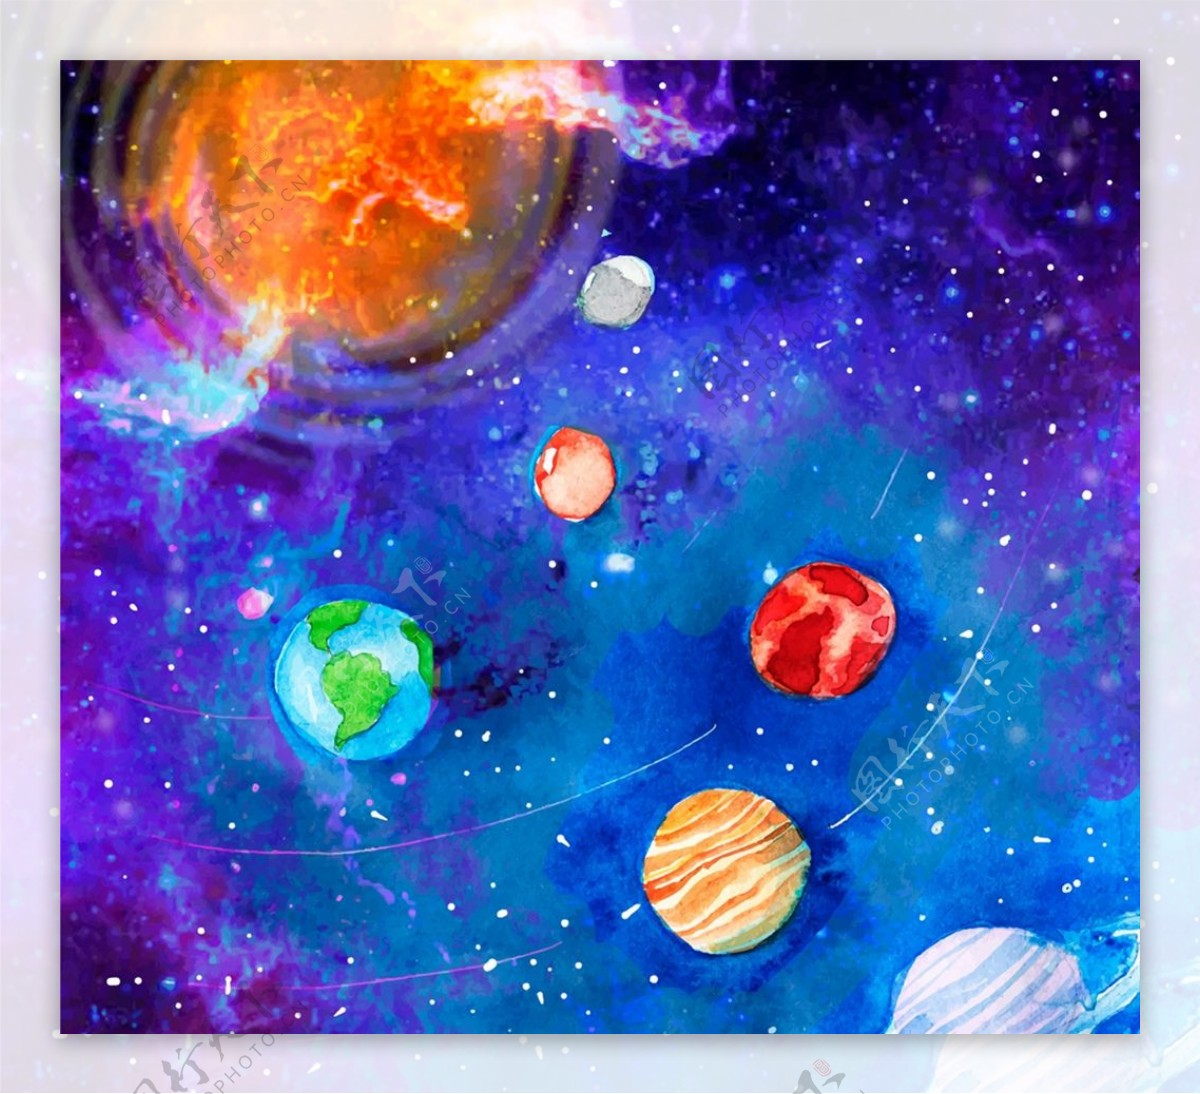 彩绘太阳系风景图片